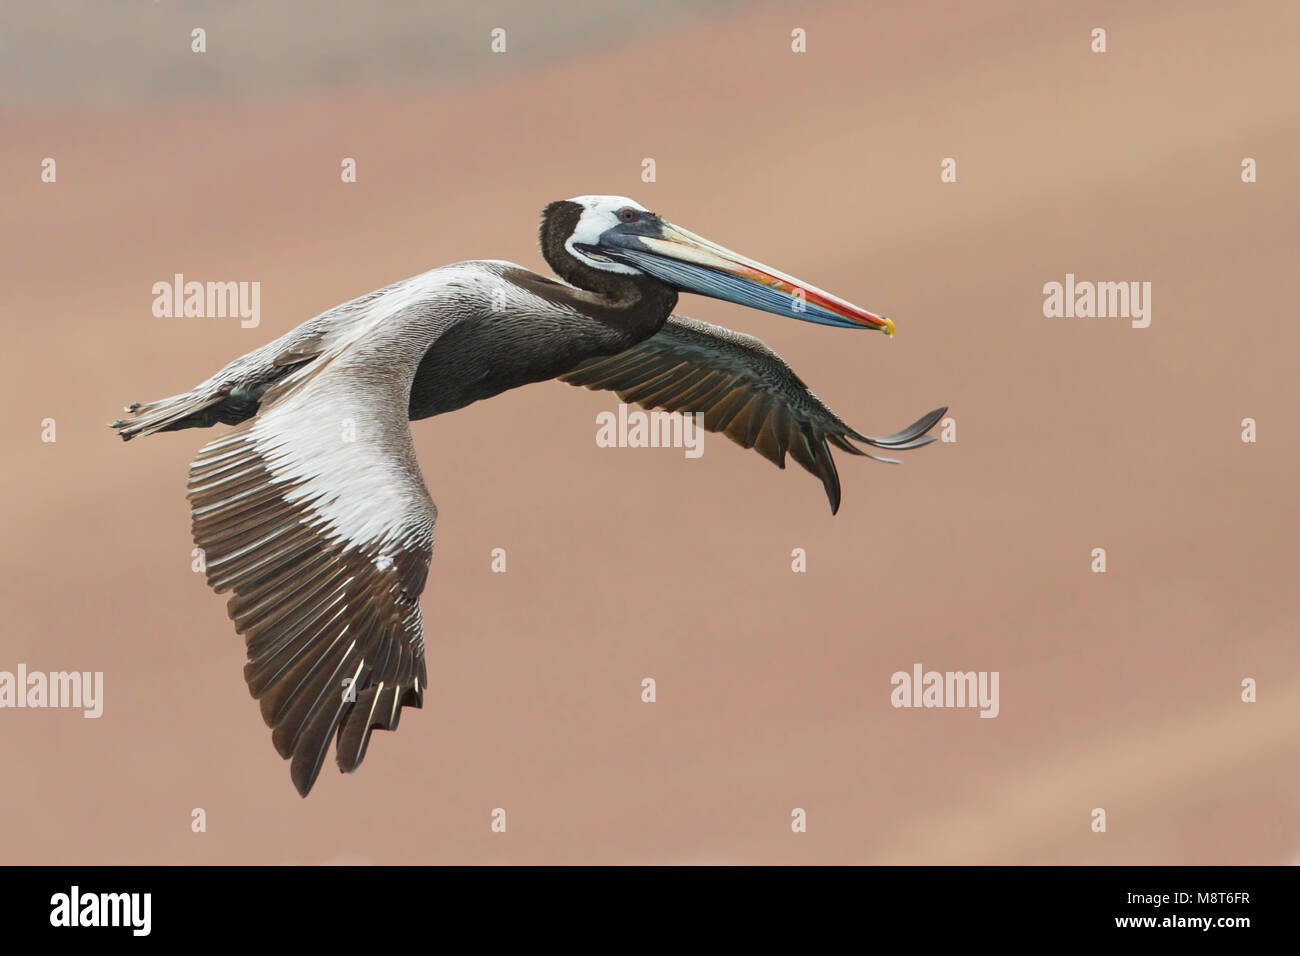 Bird image made by Dubi Shapiro Stock Photo